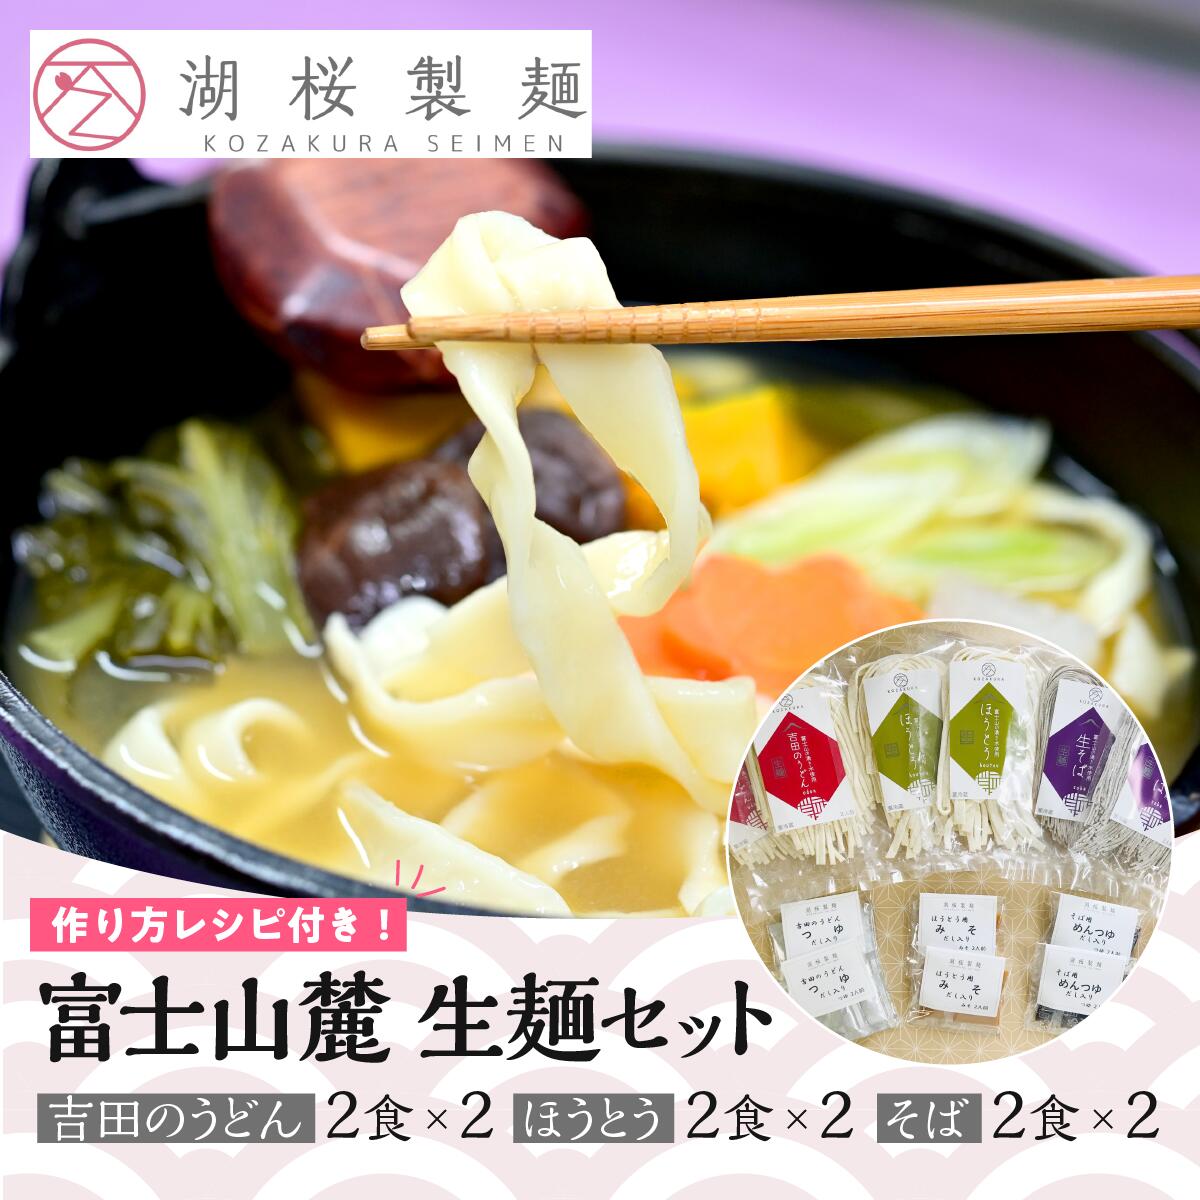 [湖桜製麺]富士山麓 生麺セット(吉田のうどん2食×2、ほうとう2食×2 、そば2食×2)